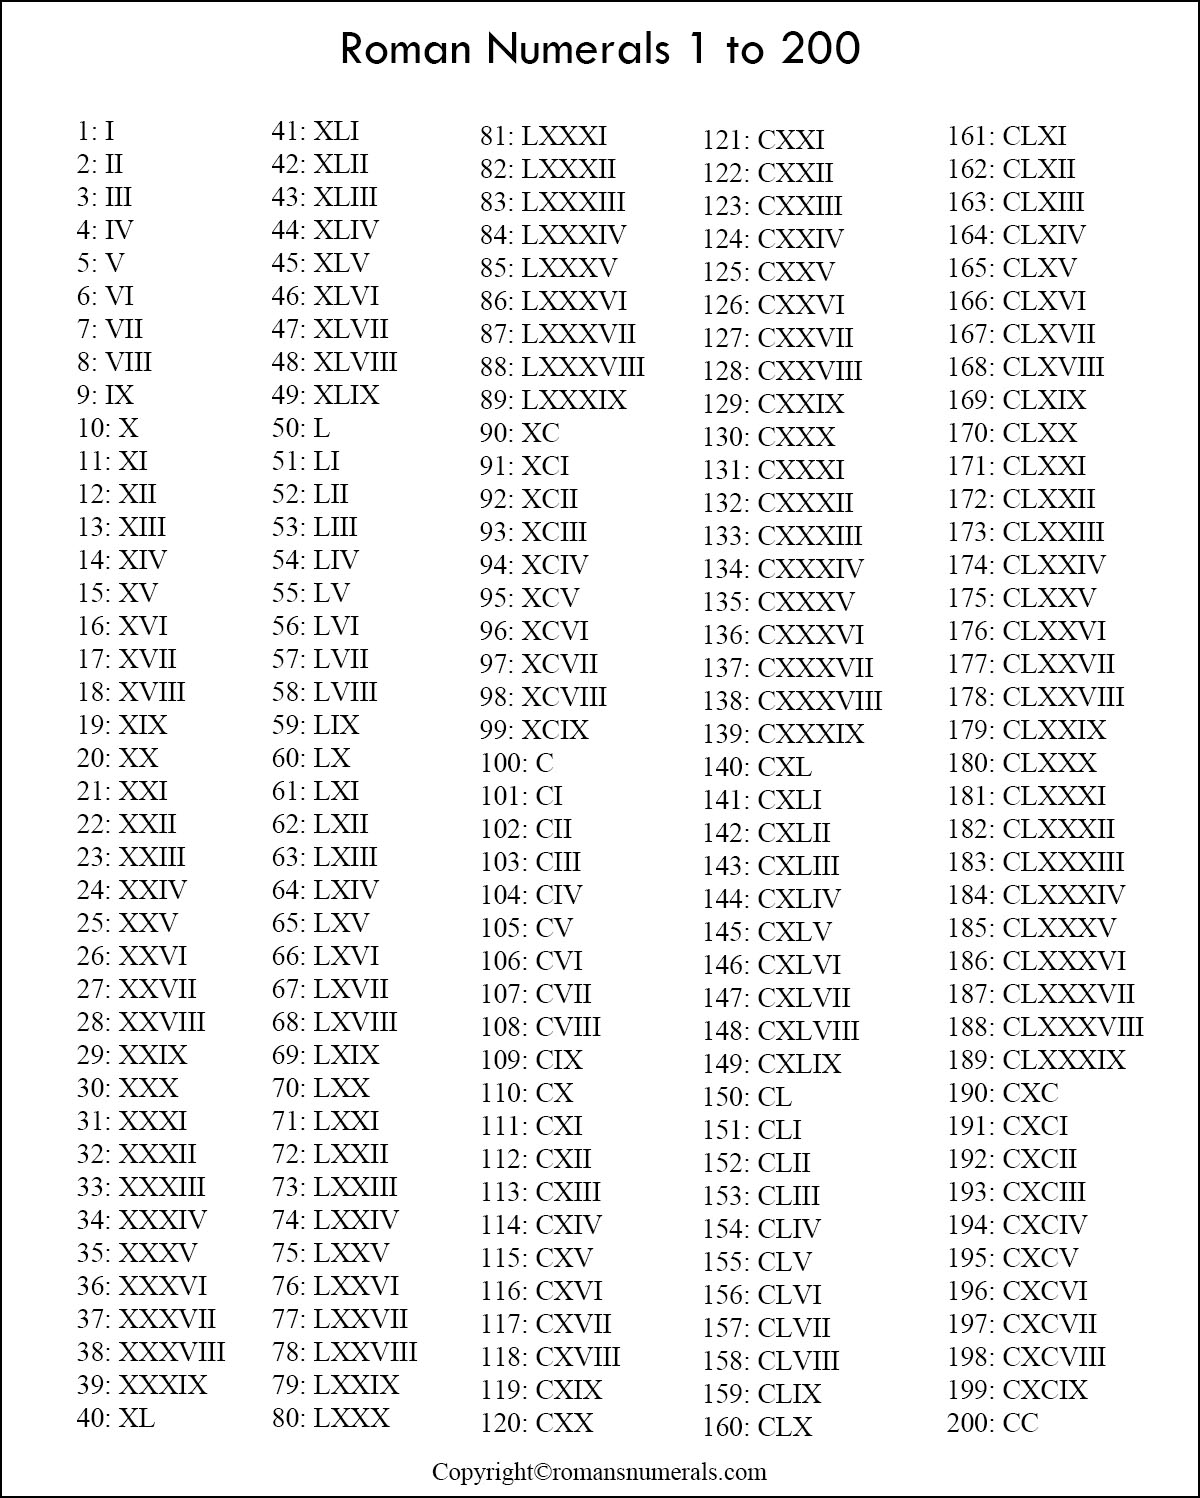 Printable Roman Numerals 1 to 200 Roman Numerals Pro